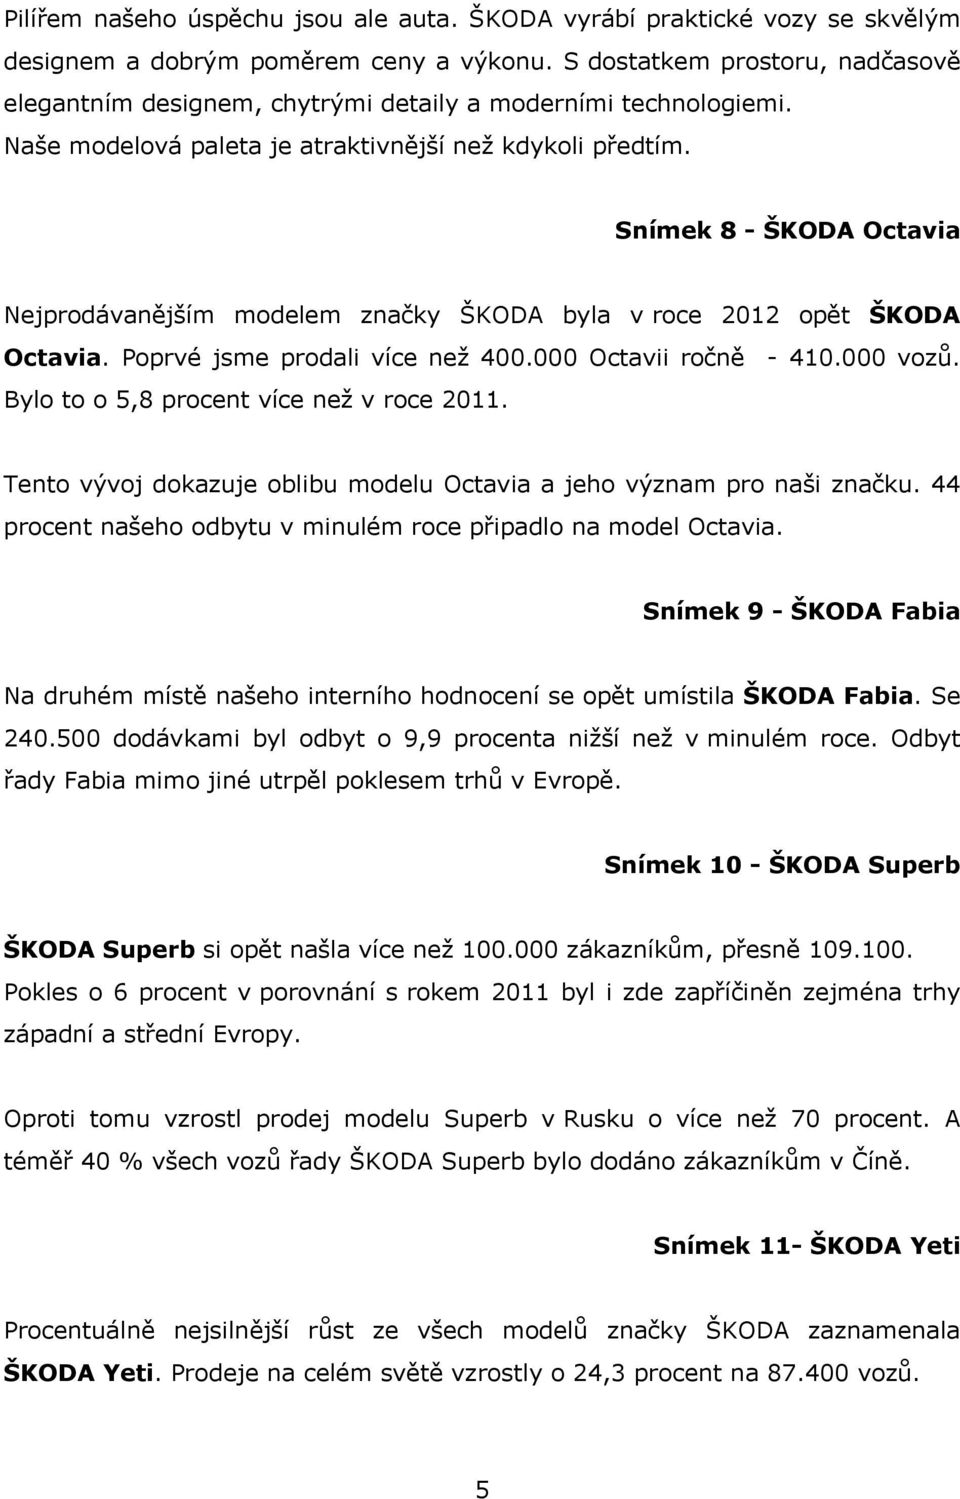 Snímek 8 - ŠKODA Octavia Nejprodávanějším modelem značky ŠKODA byla v roce 2012 opět ŠKODA Octavia. Poprvé jsme prodali více než 400.000 Octavii ročně - 410.000 vozů.